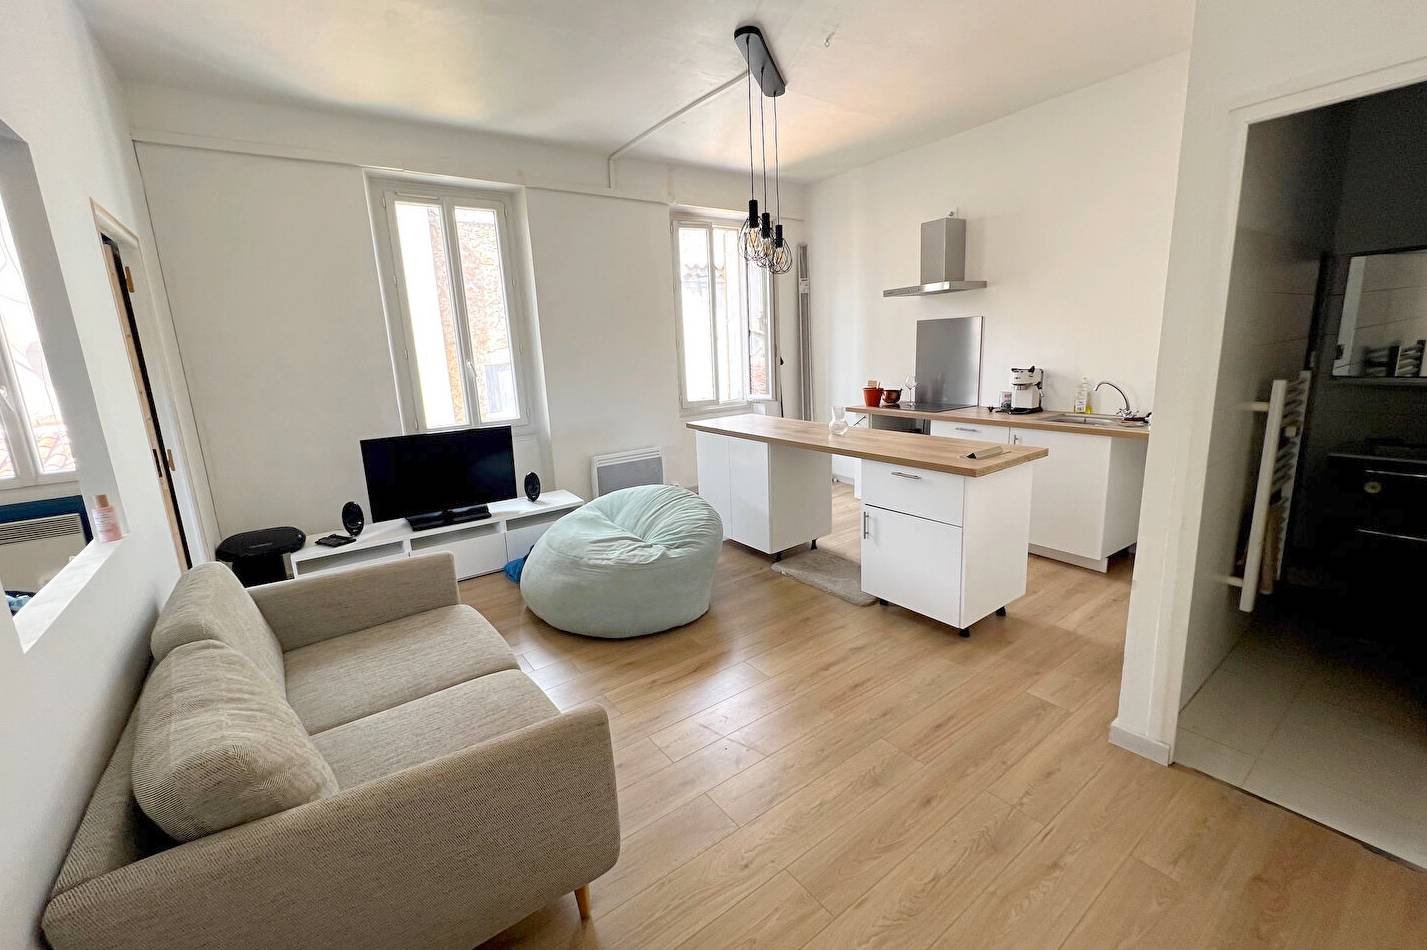 Appartement 2 pièces à vendre dans une ancienne maison de ville du quartier Saint-Jean du Var de Toulon